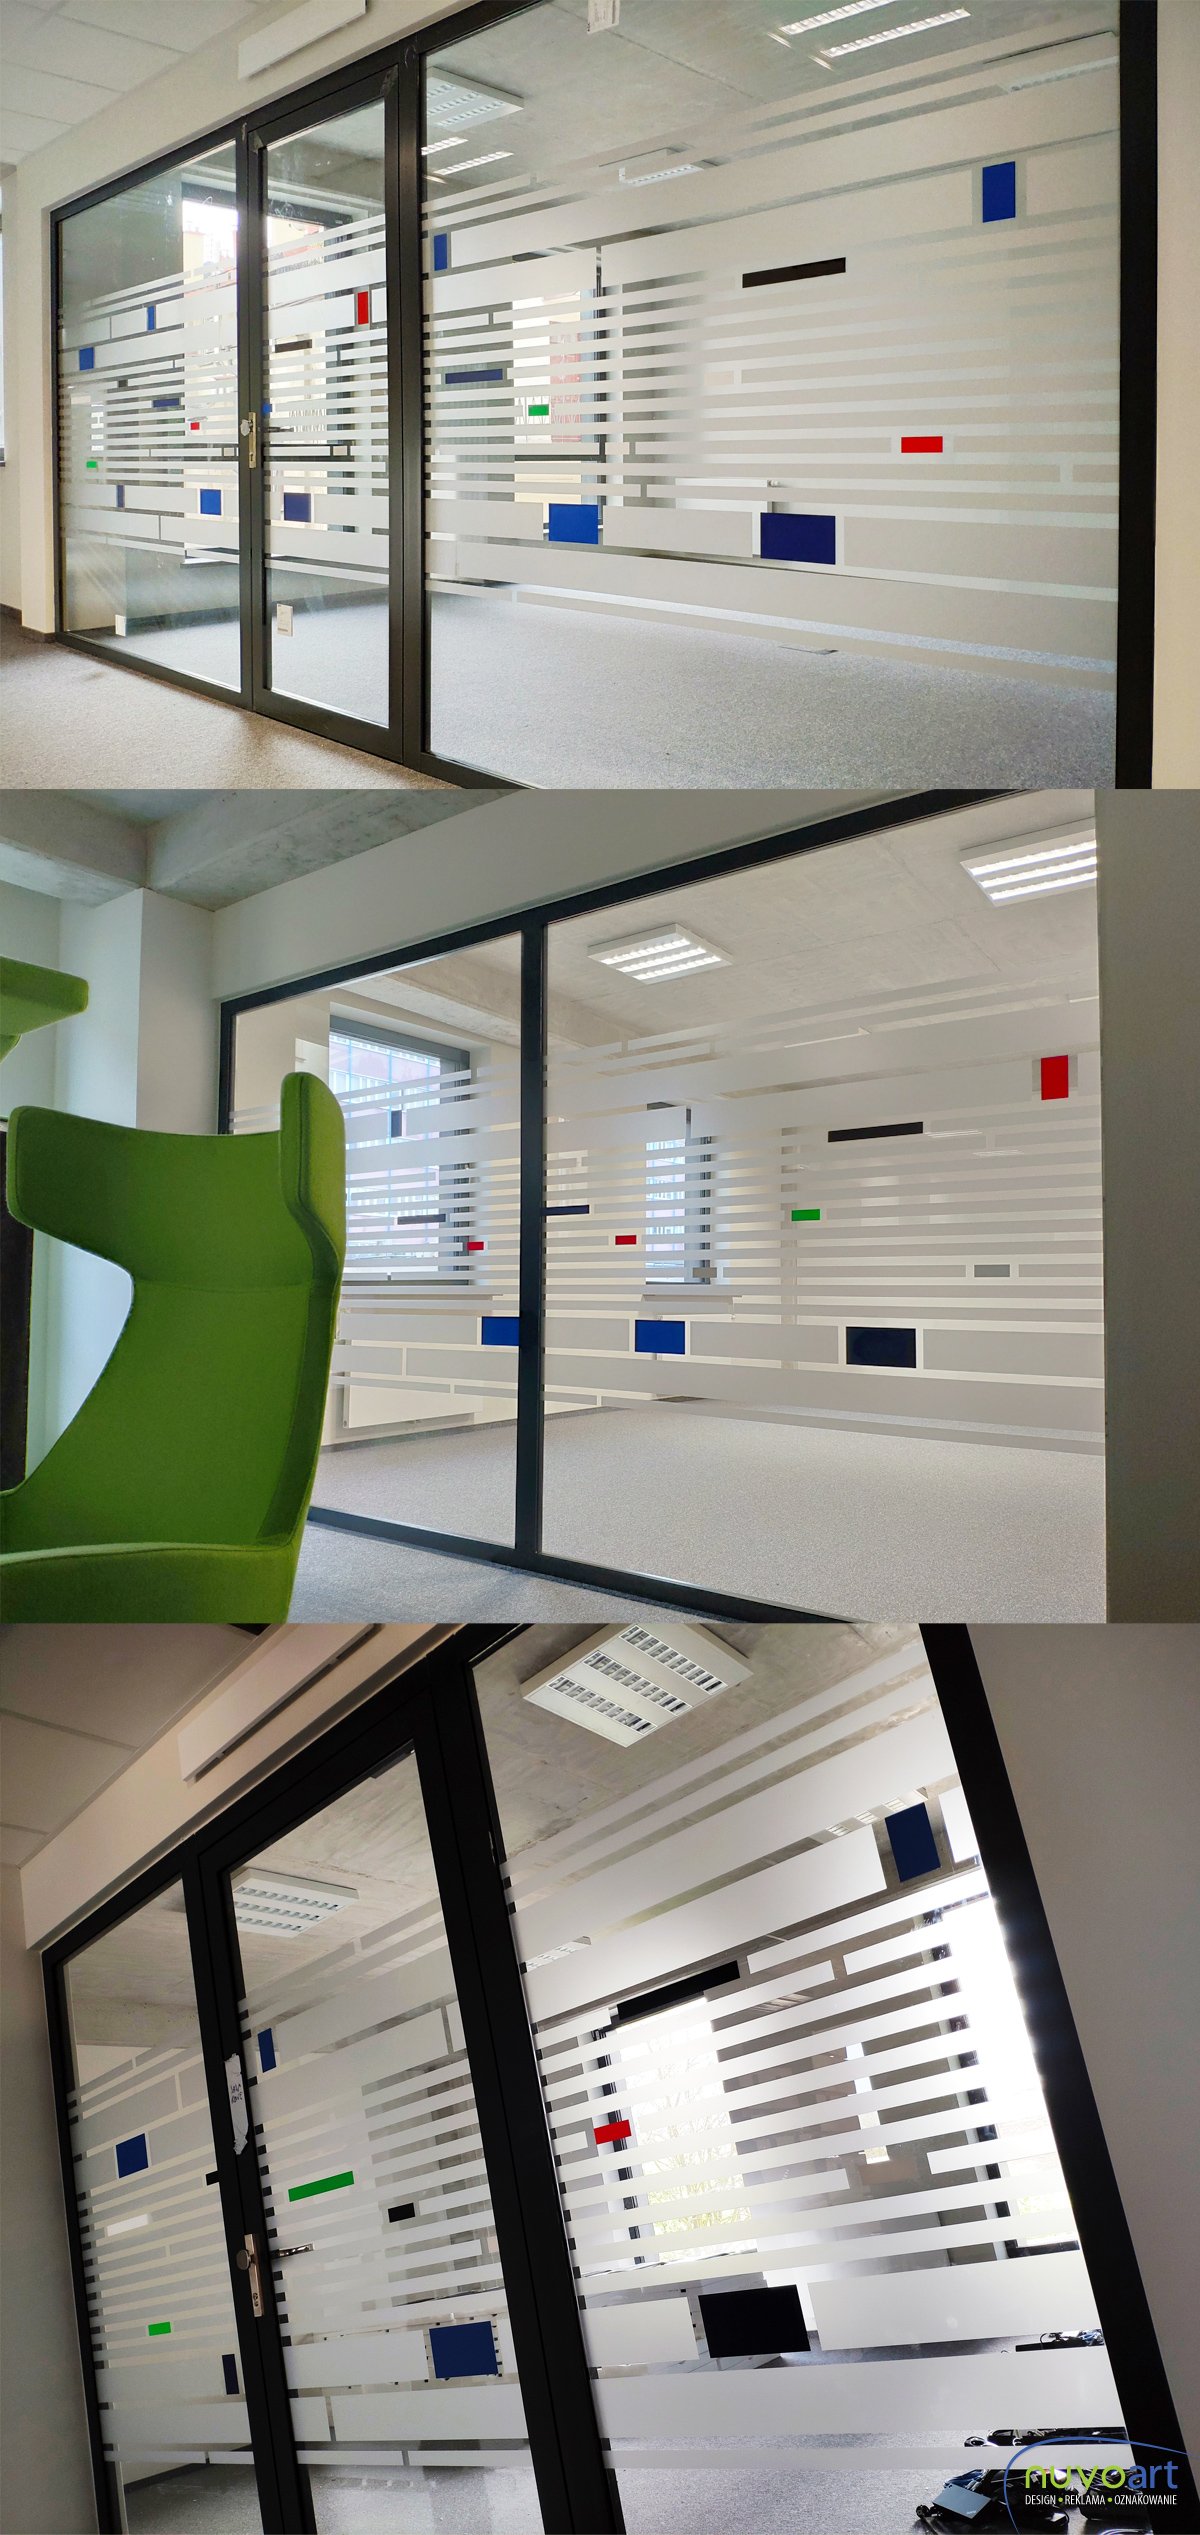 Folia mrożona wraz z wplecionymi kolorowymi elementami folii ploterowych. Realizacja w krakowskim biurowcu.